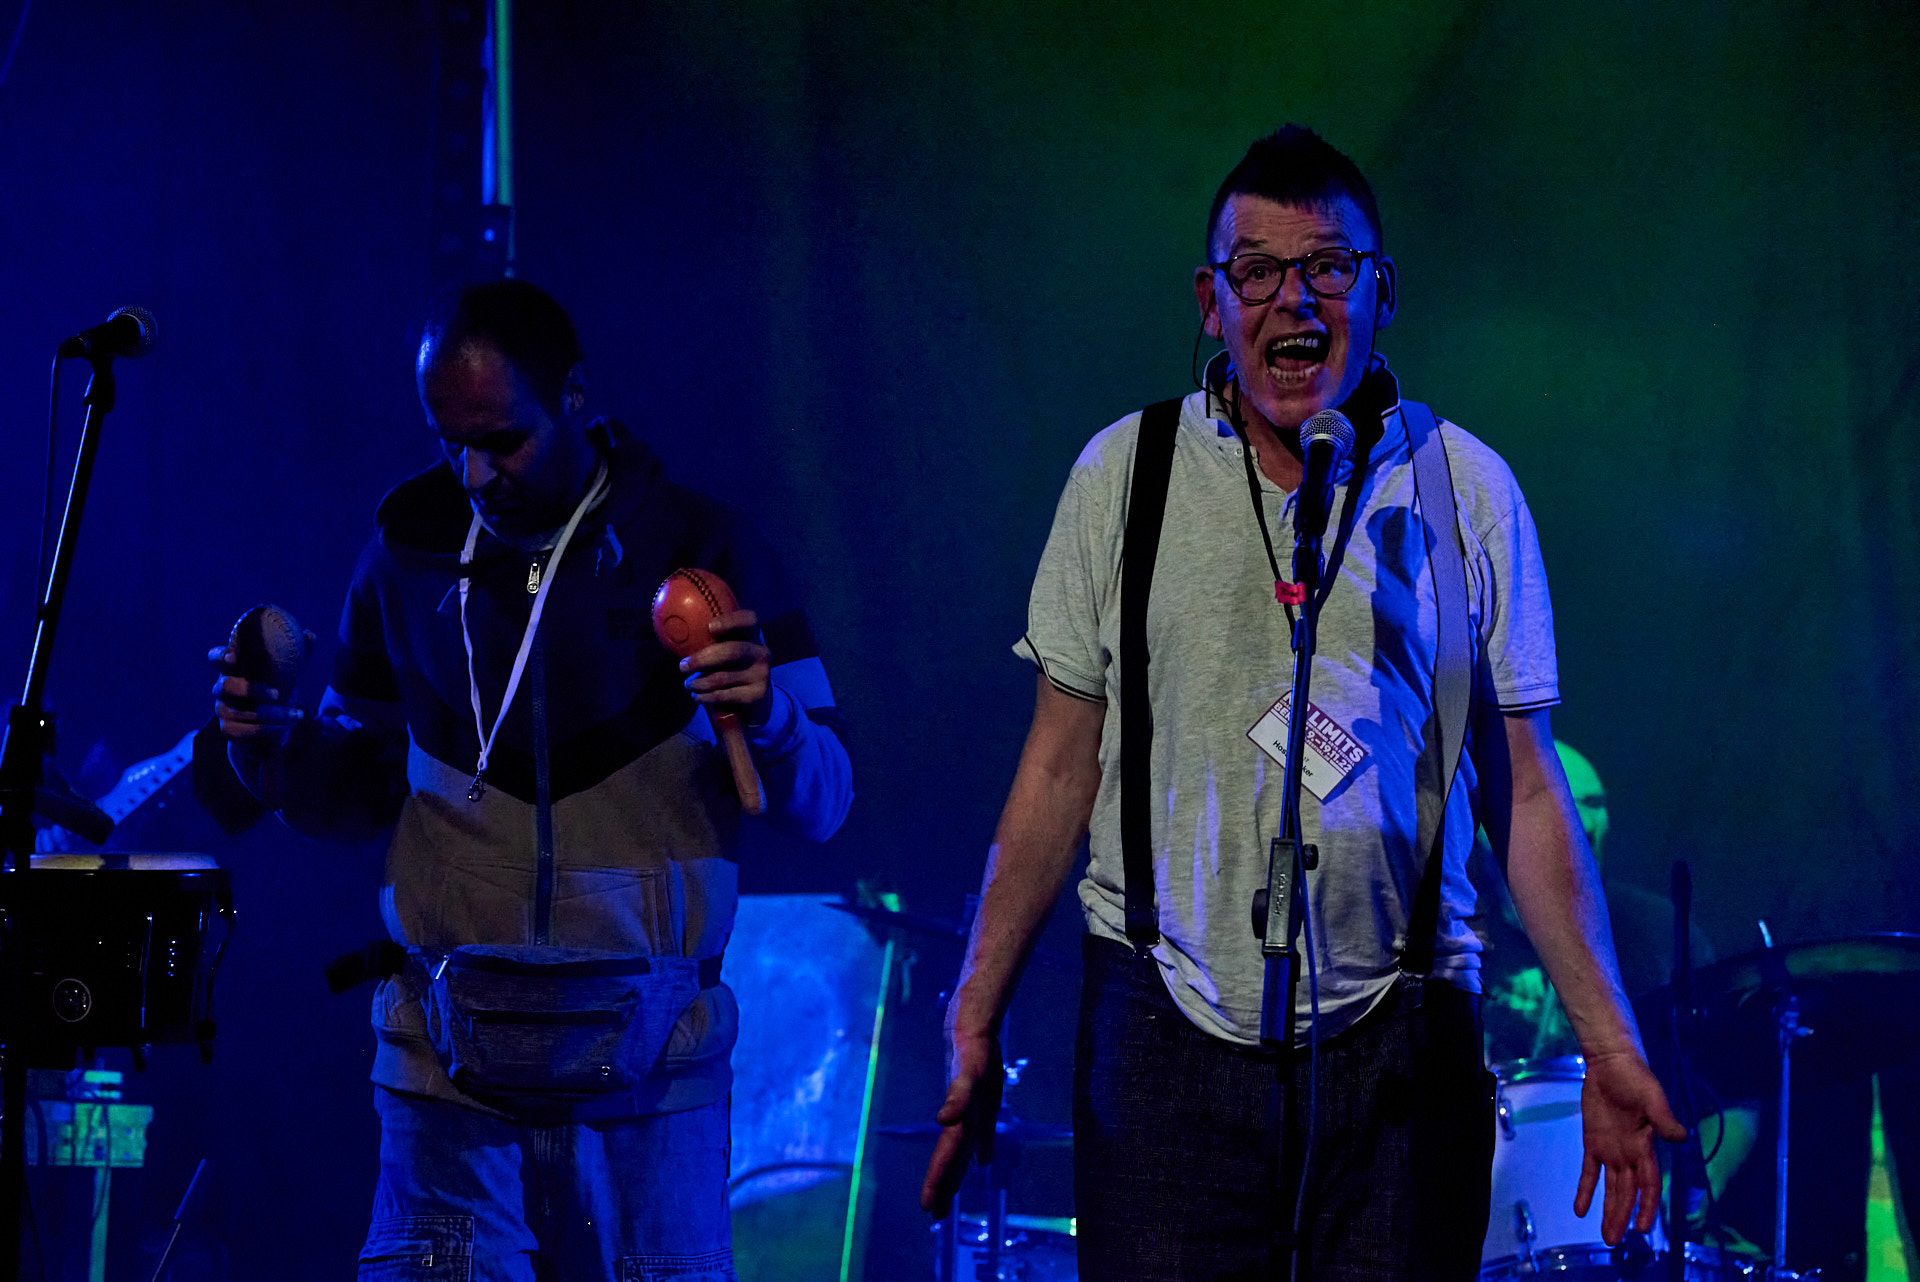 Sänger Hoss mit weit geöffnetem Mund singend auf der Bühne vor seinen Bandkollegen mit Rassel im Hintergrund.